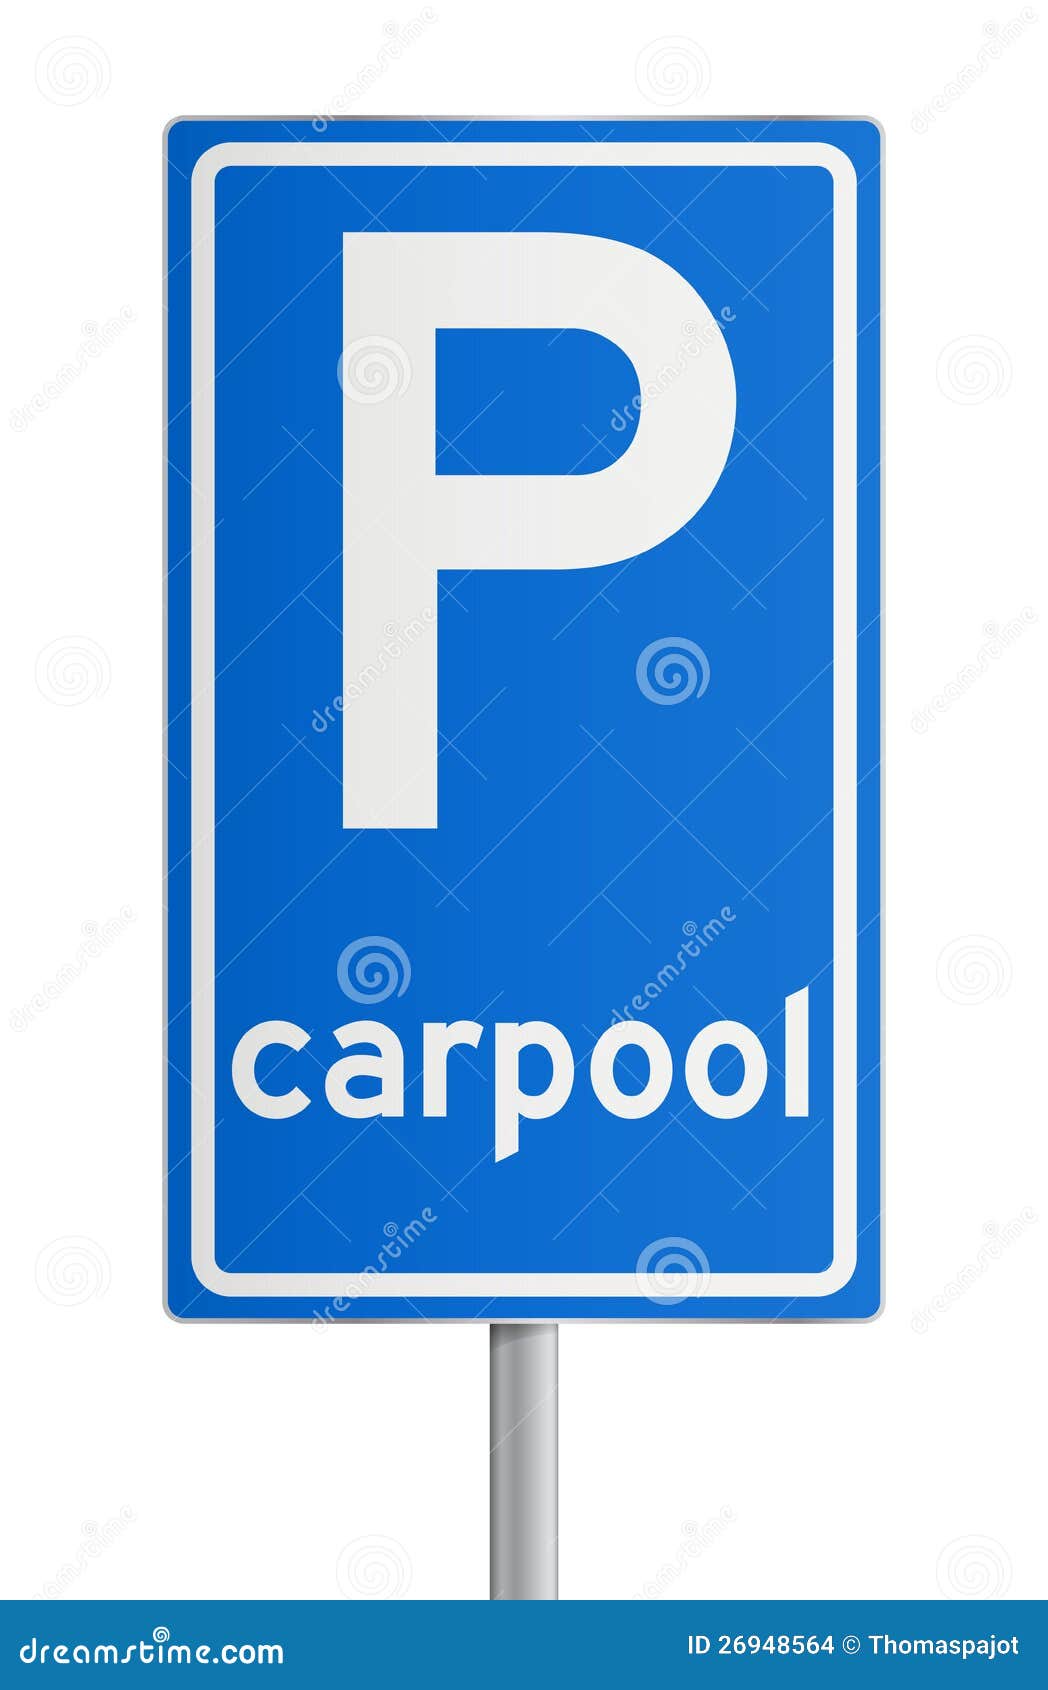 Roadsign del Carpool. Illustrazione del roadsign isolato dell'azzurro del carpool